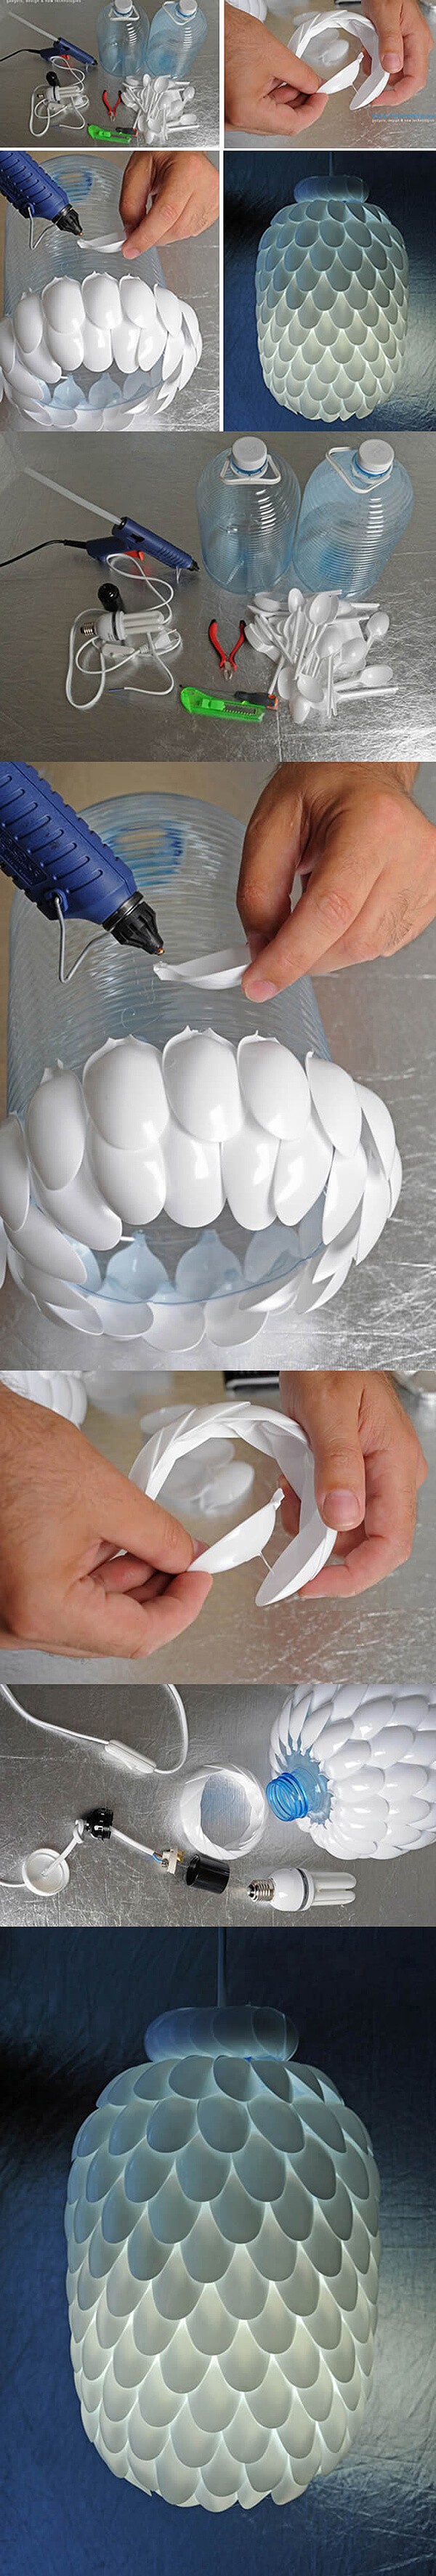 14. Anche con i cucchiai di plastica potete creare un lampadario incredibile